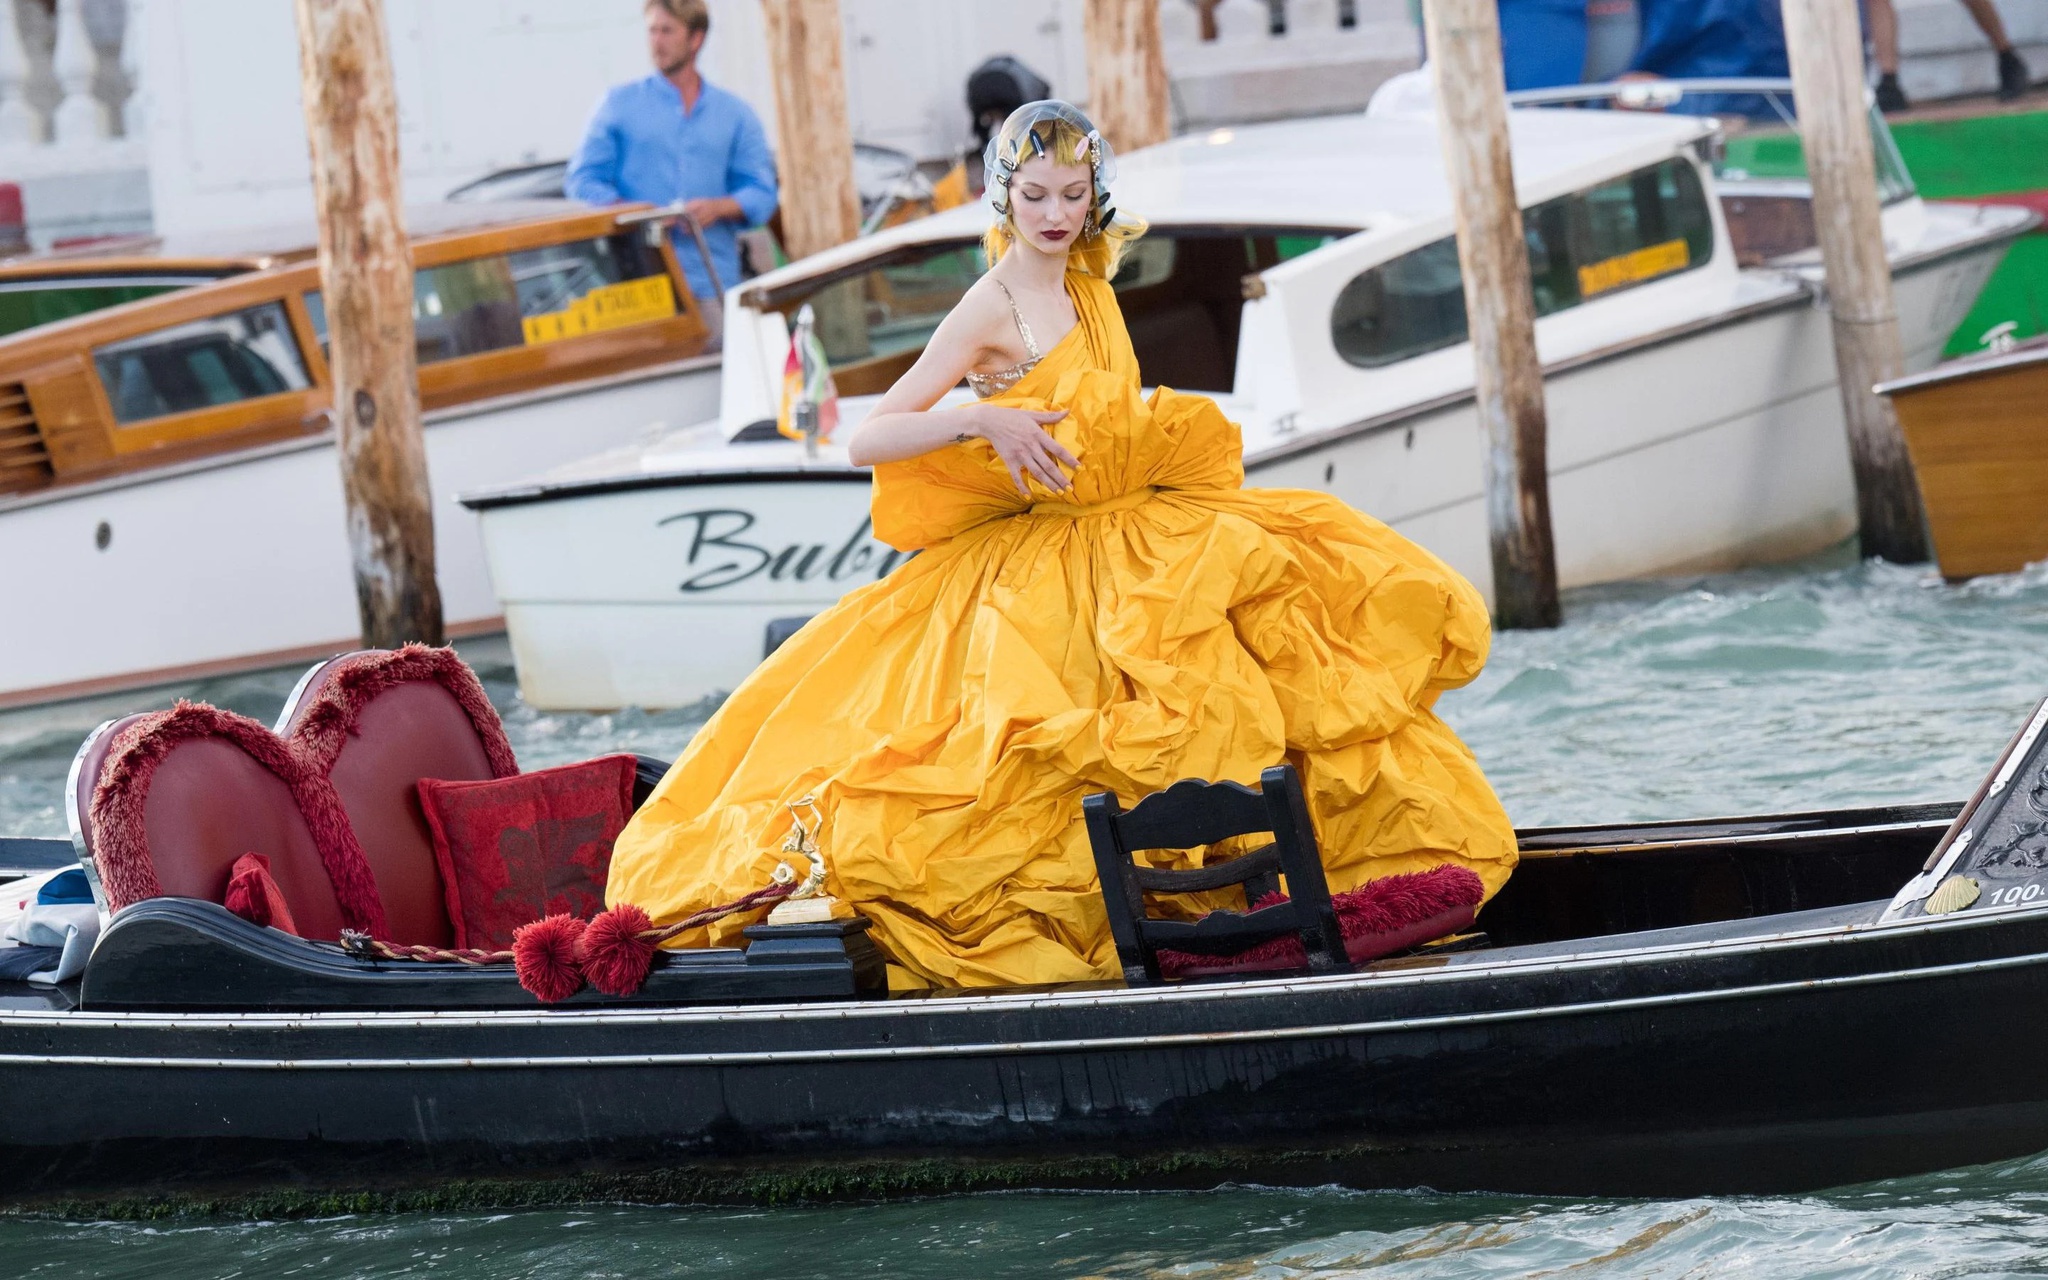 Bộ sưu tập Alta Moda 2021 - Dolce & Gabbana thu hút giới nhà giàu đến  Venice mua sắm - Tạp Chí Thời Trang Tóc